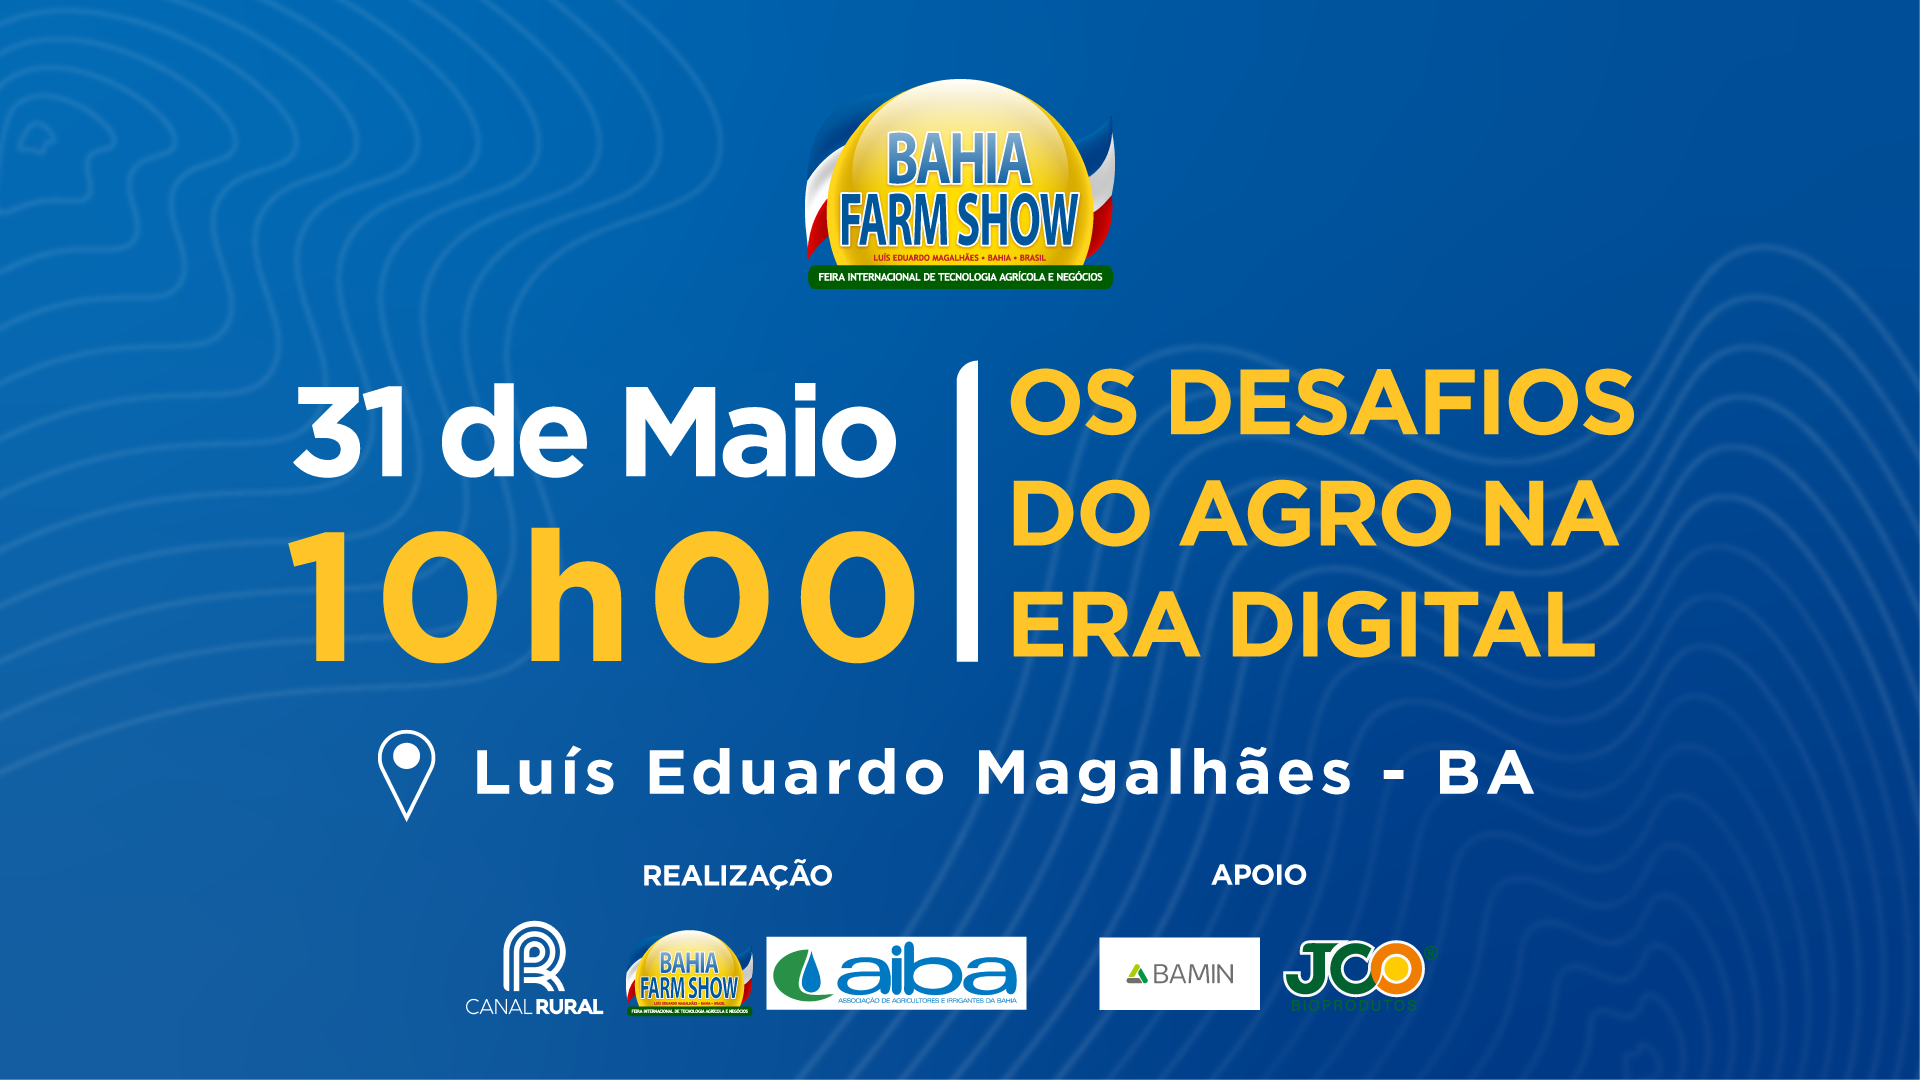 Bahia Farm Show - Fórum Inovação e Tecnologia